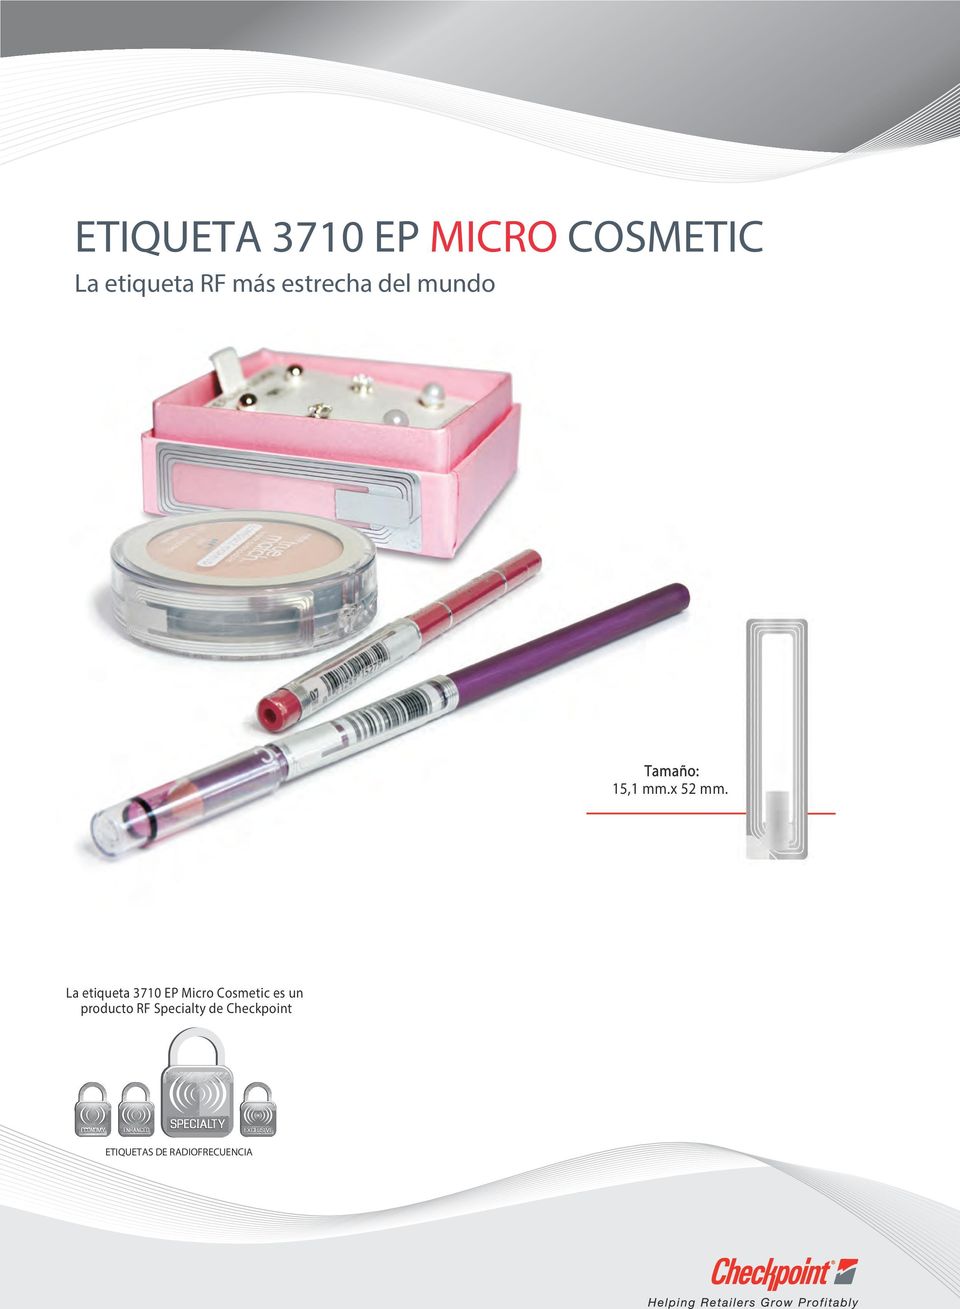 La etiqueta 3710 EP Micro Cosmetic es un producto